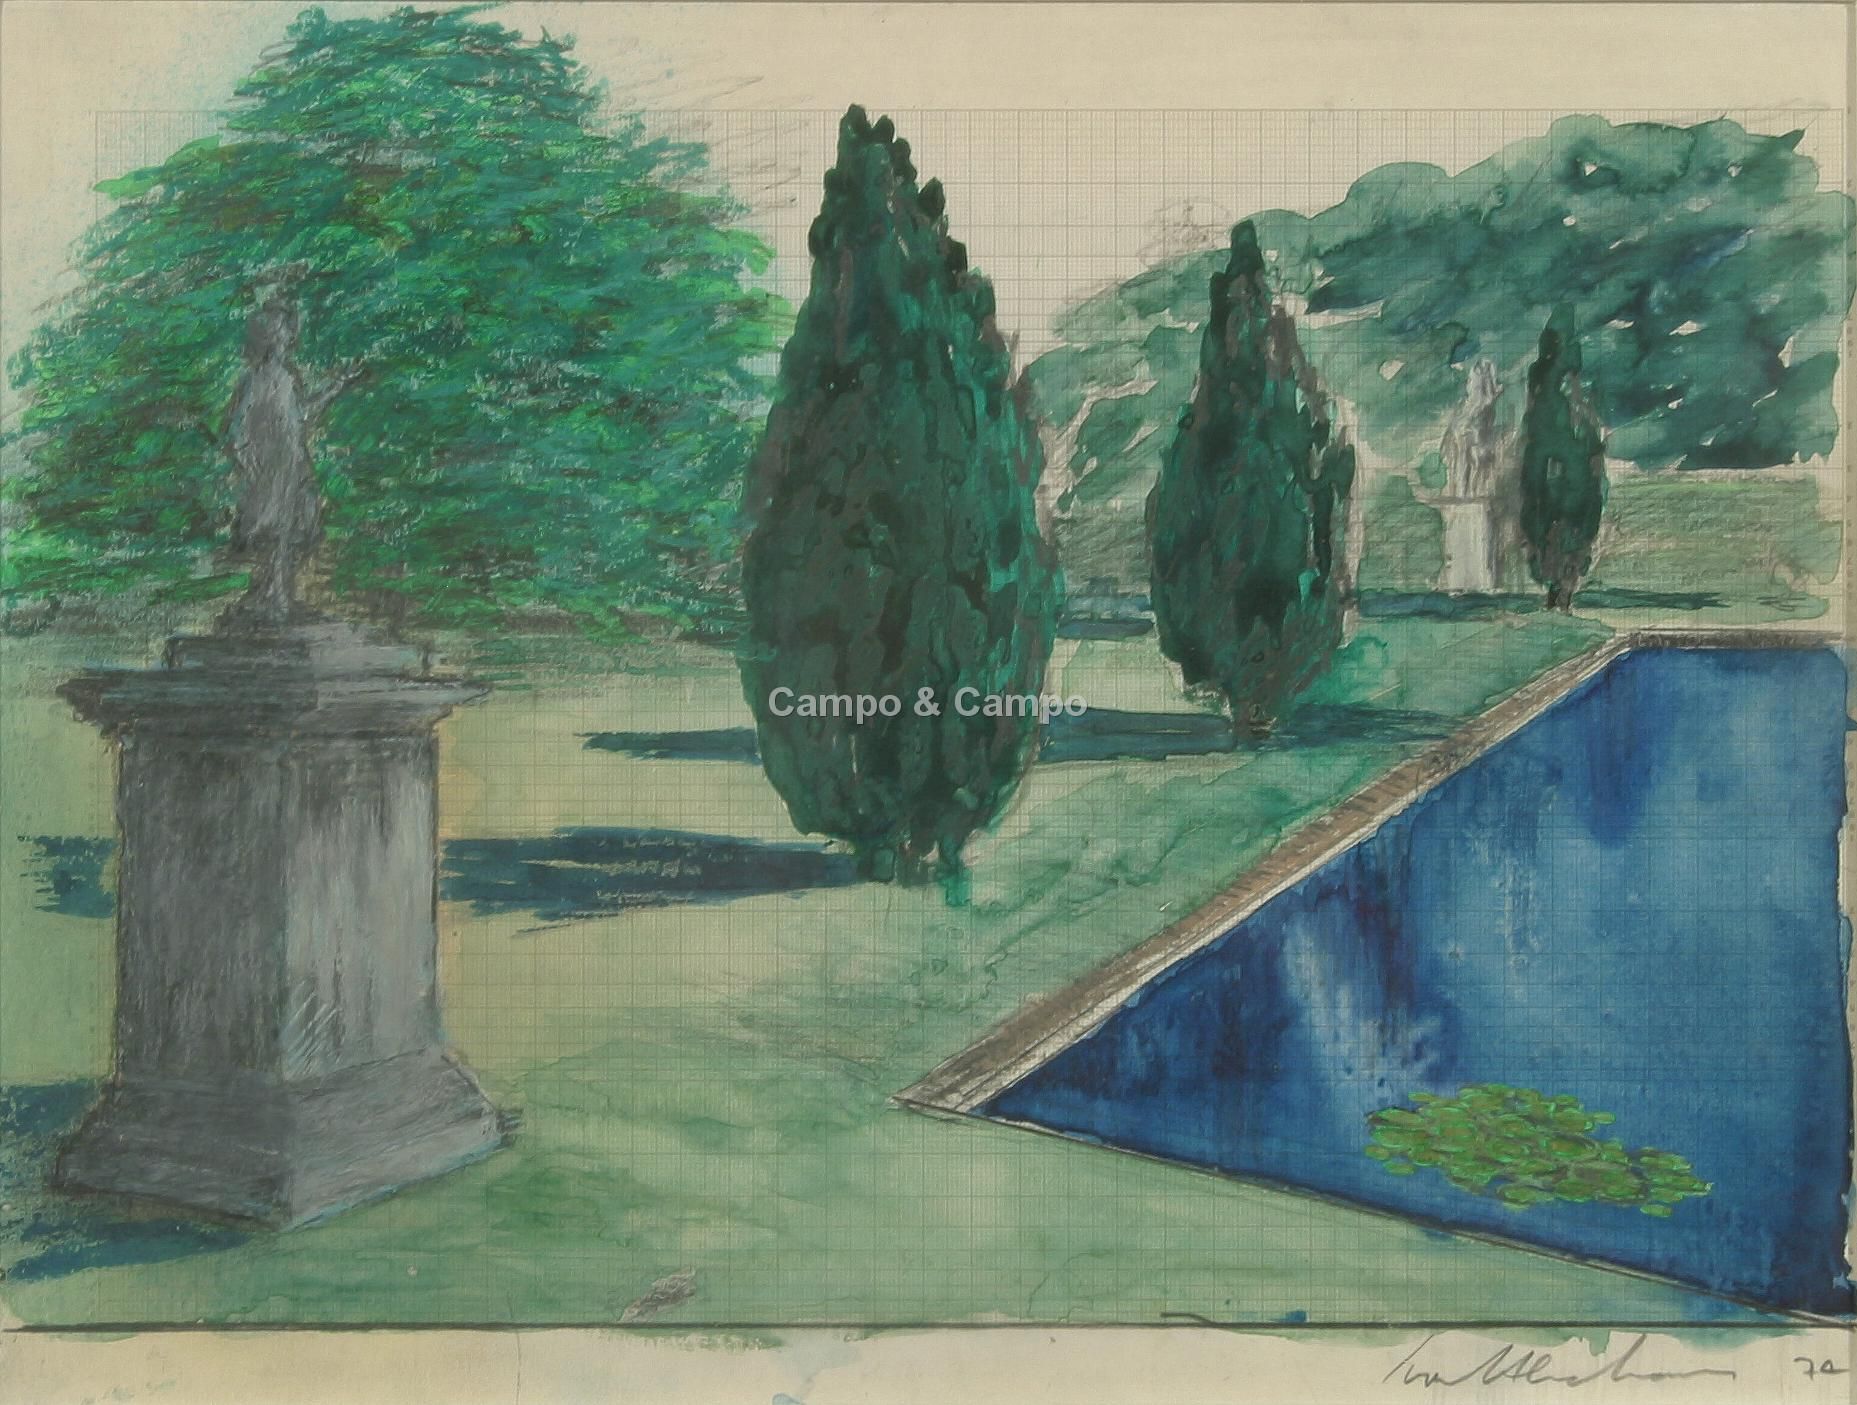 ABRAHAMS IVOR 1935 'Mediterraanse tuin'
Aquar / papier.
Get. Sig. '70 29 x 39 cm